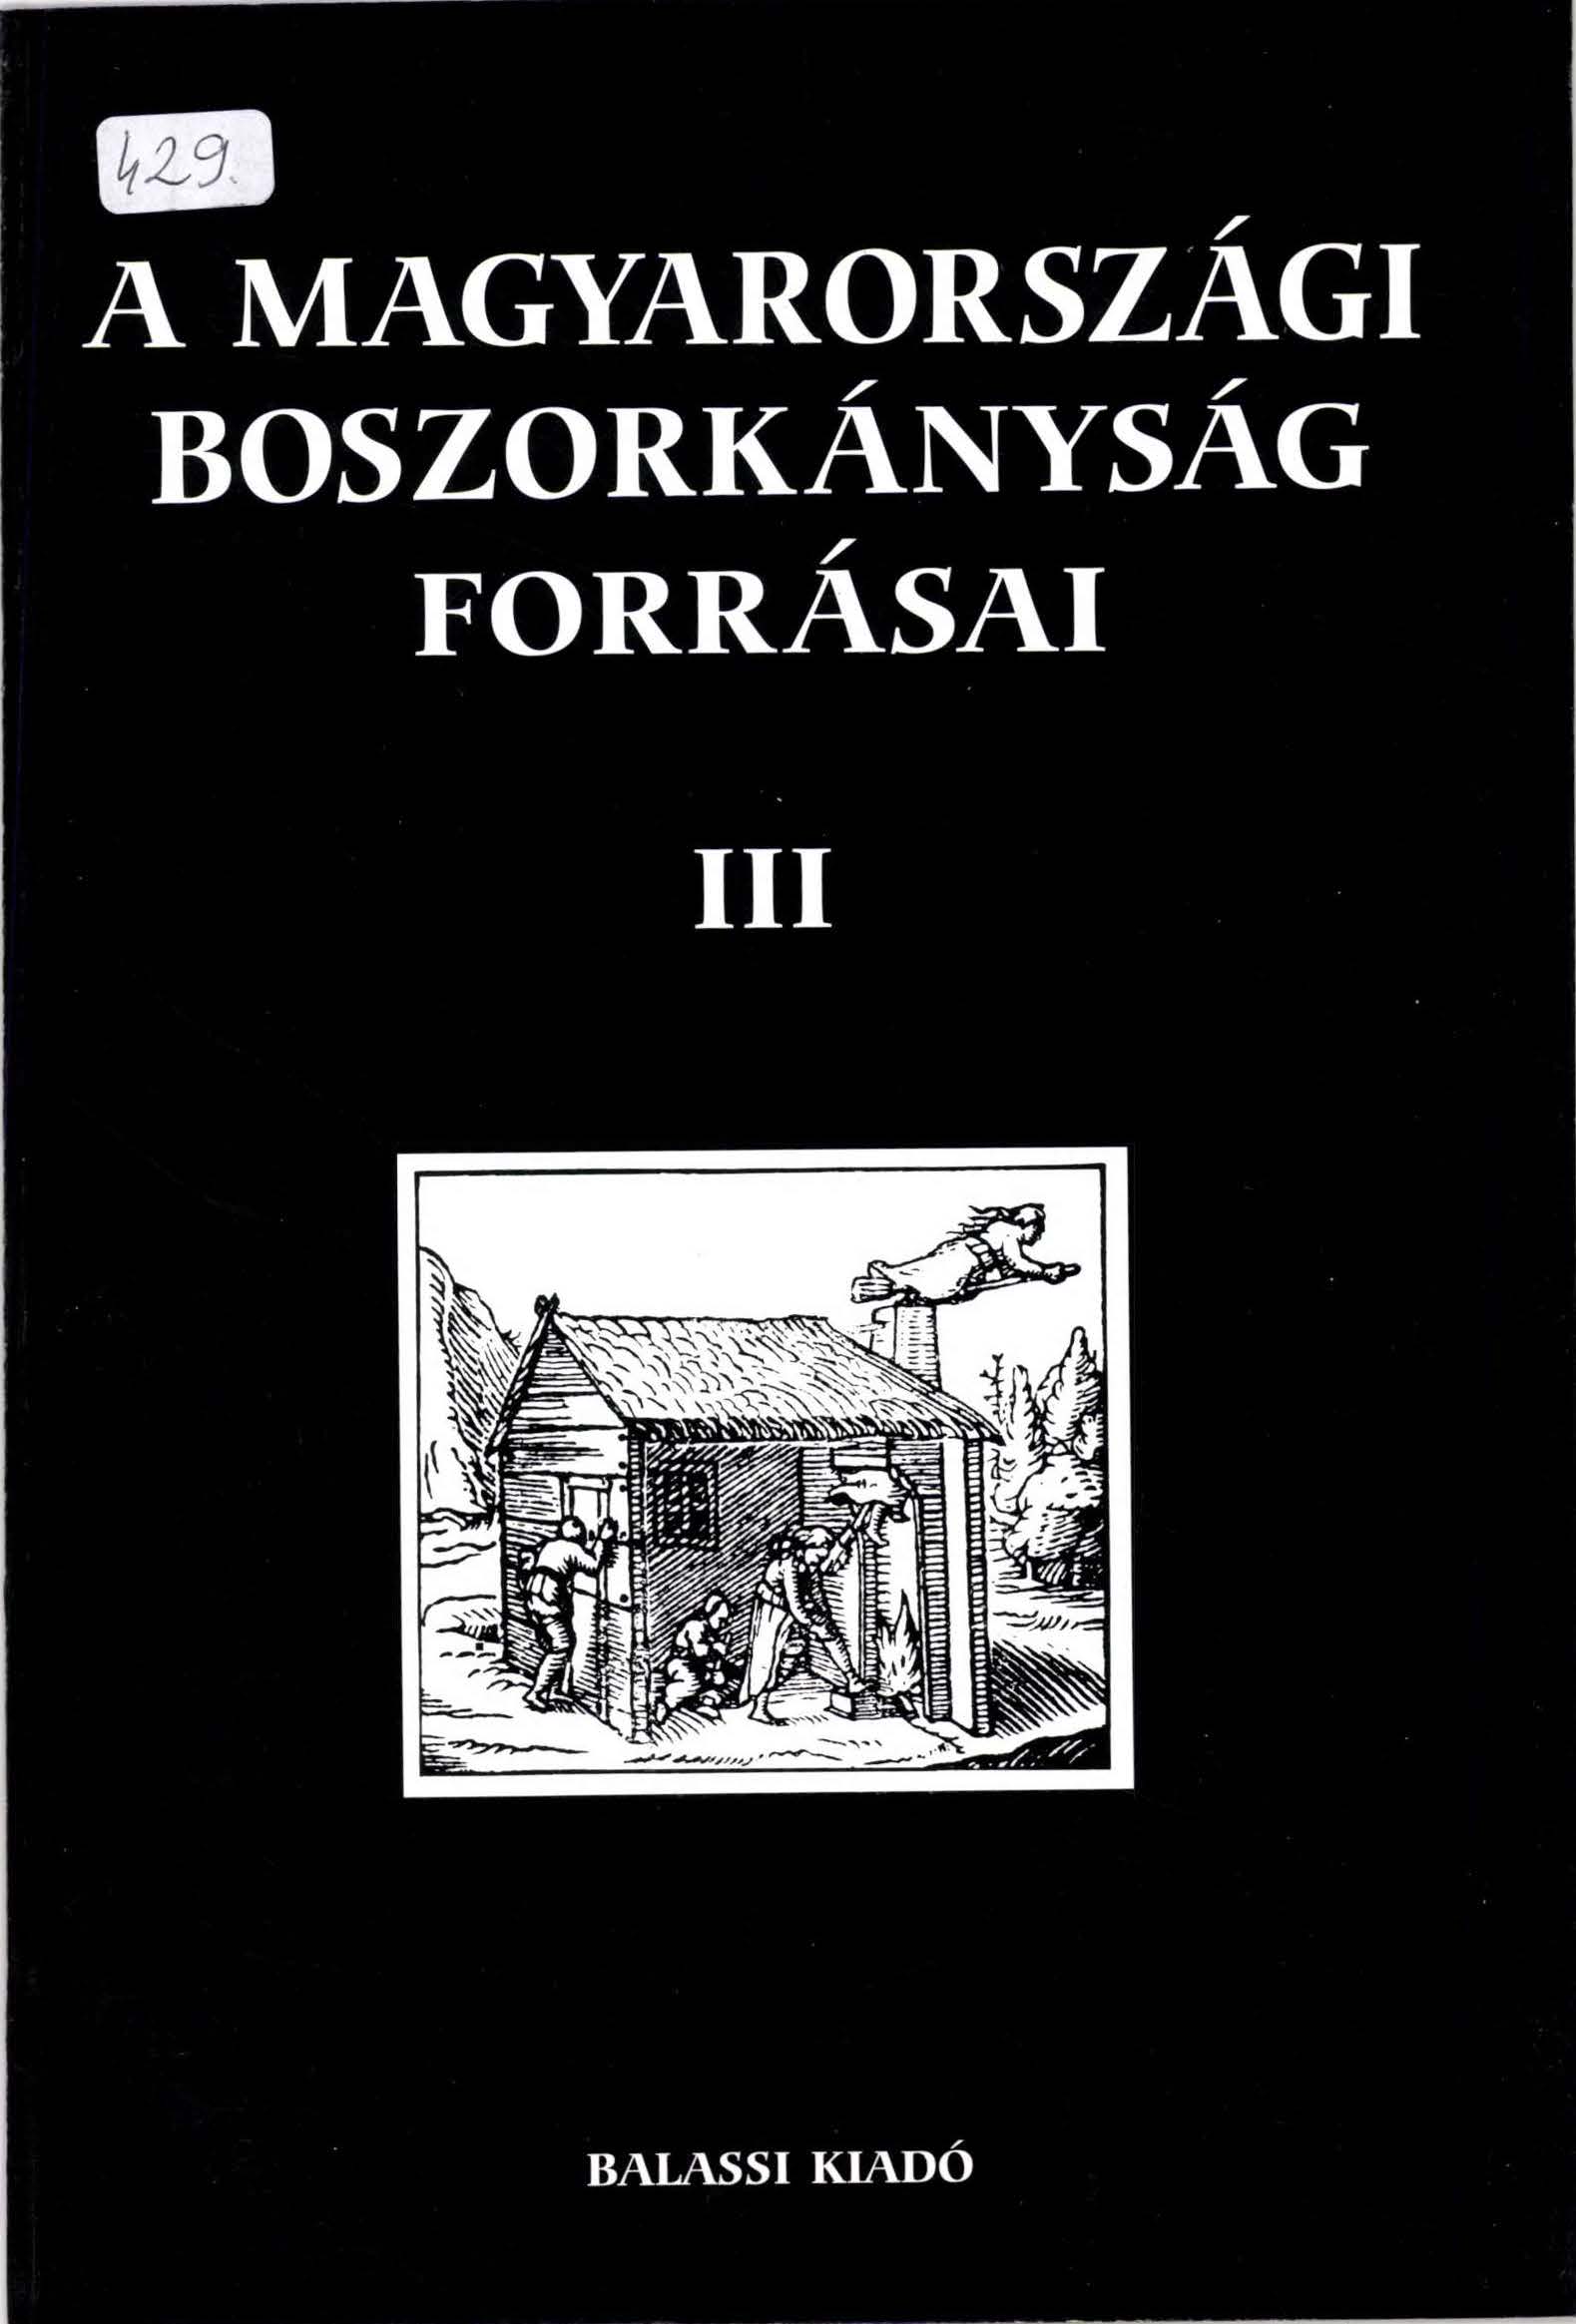 KISS A PÁL ANTAL S 2003 Magyarországi boszorkányság forrásai III cover